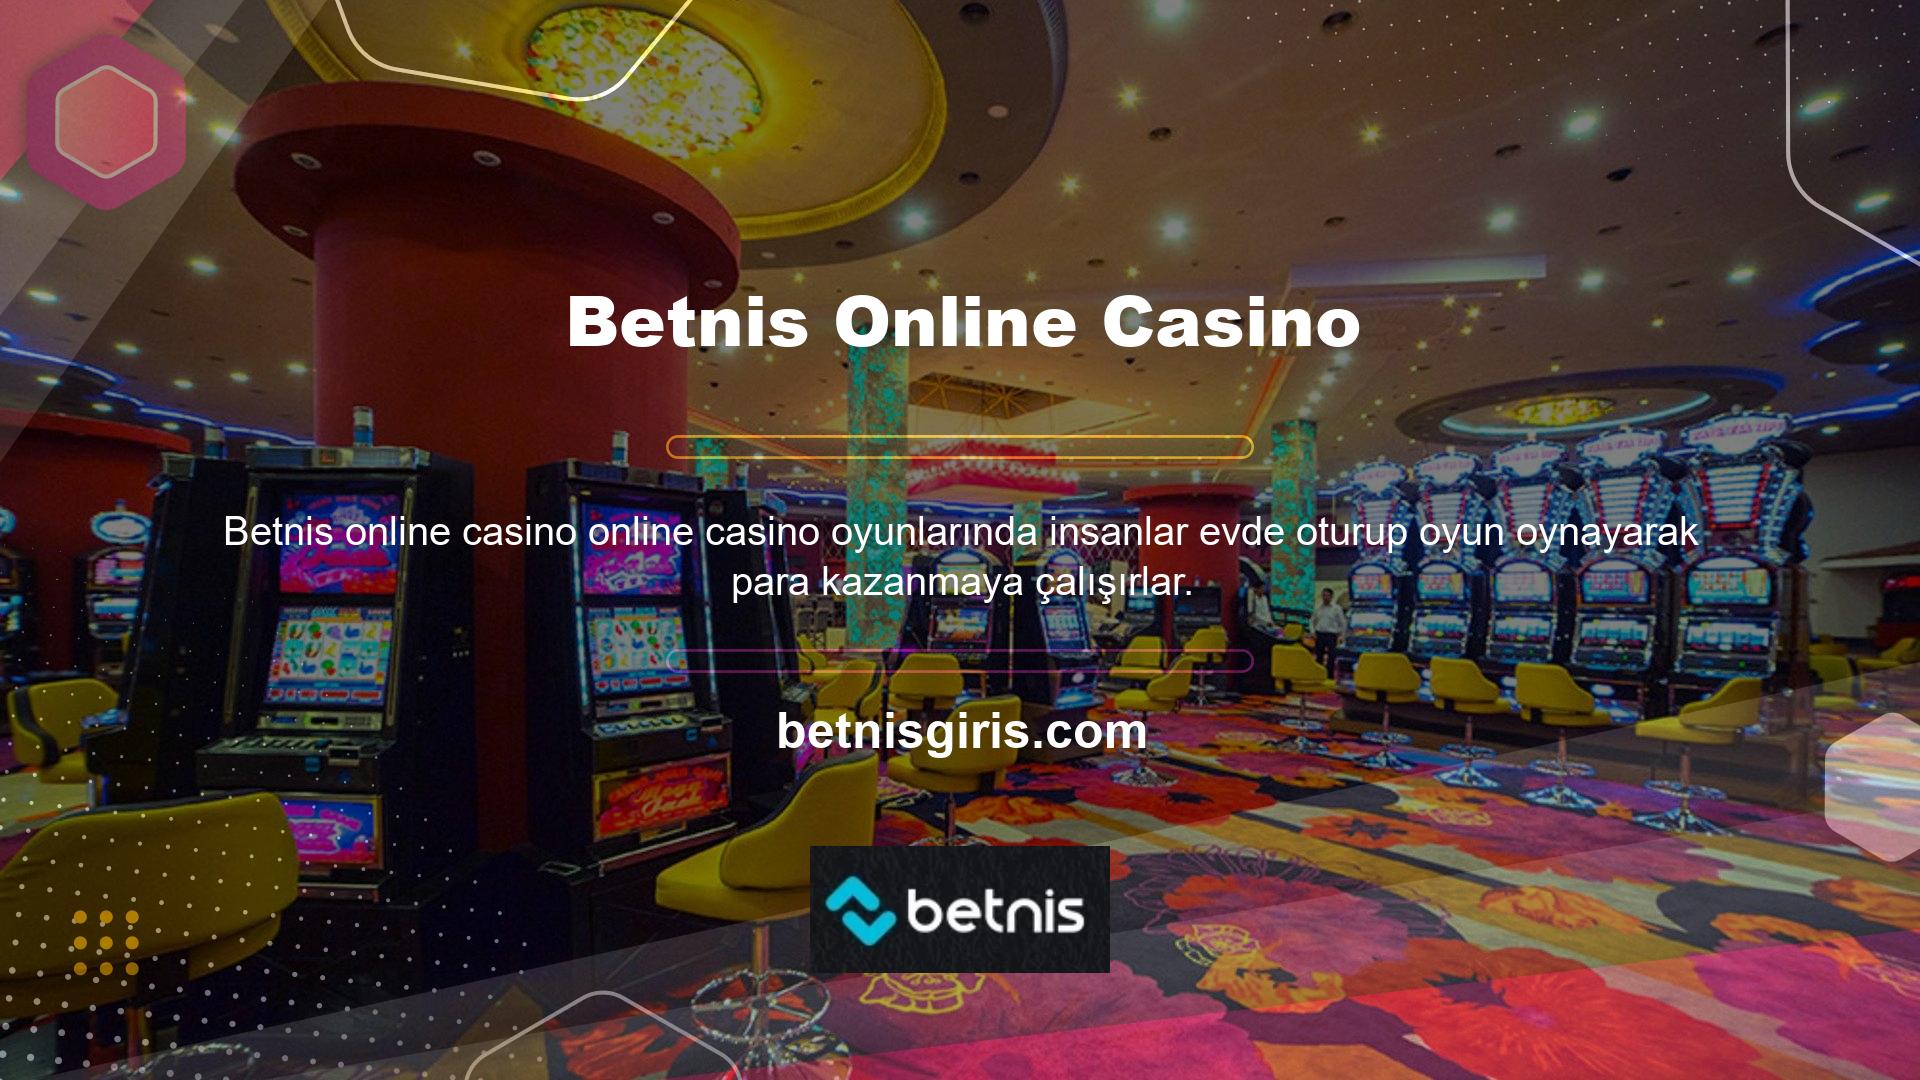 Betnis, üyelik hesapları ile üyelerine geniş bir oyun yelpazesi sunan uluslararası bir oyun sitesidir